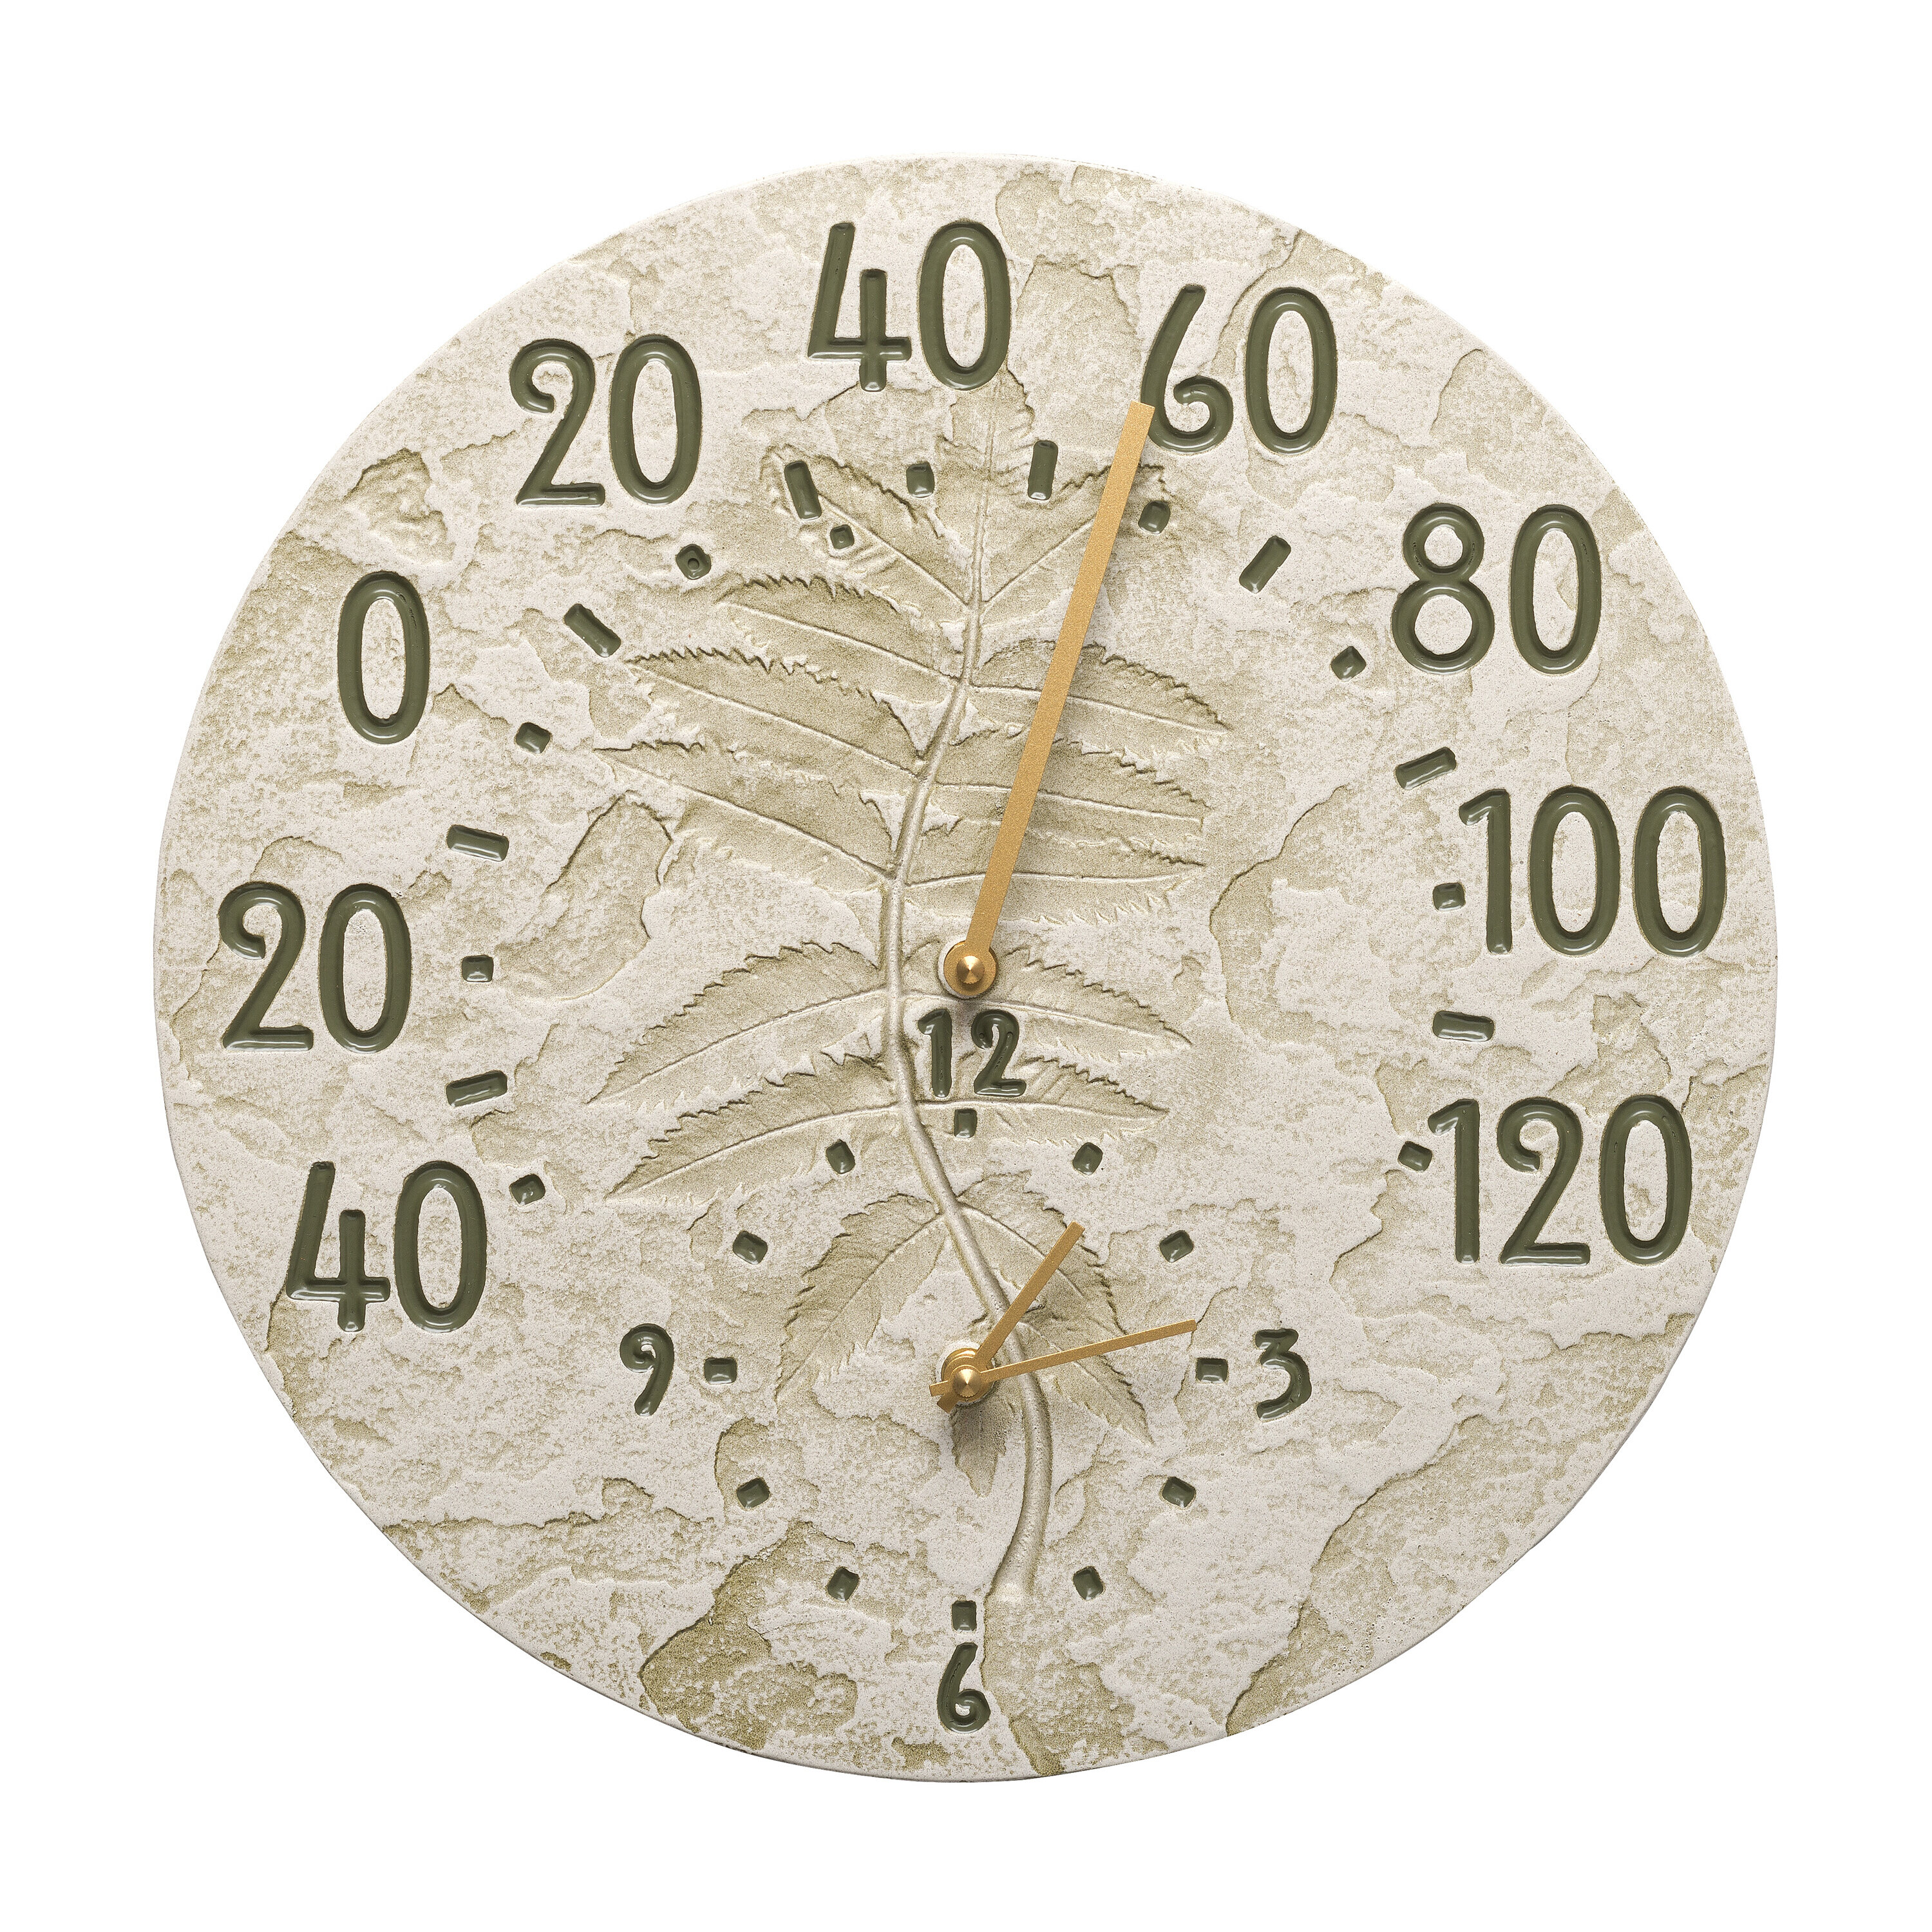 12 Inch Outdoor Clock Thermometer Indoor Waterproof Wall Clock